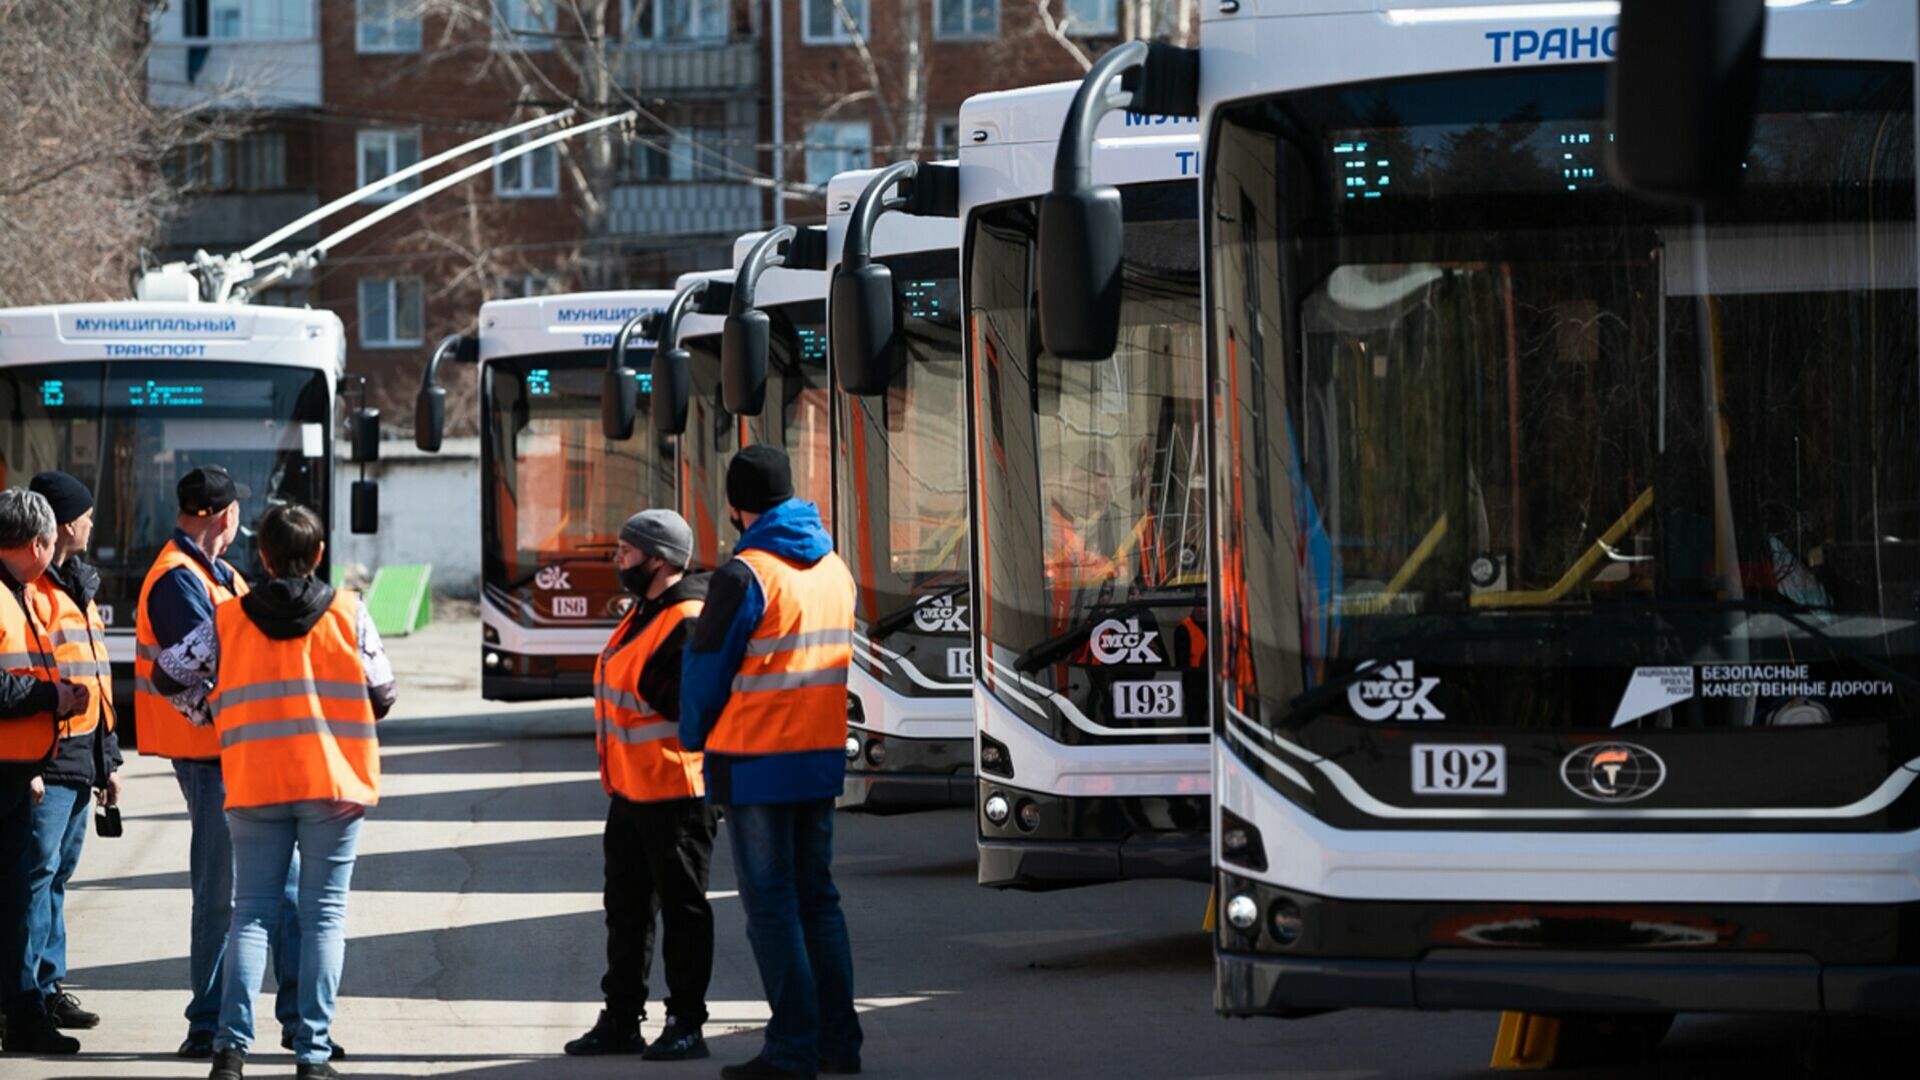 Троллейбусы нового поколения появятся на маршруте АМЗ - Молдавская в Челябинске